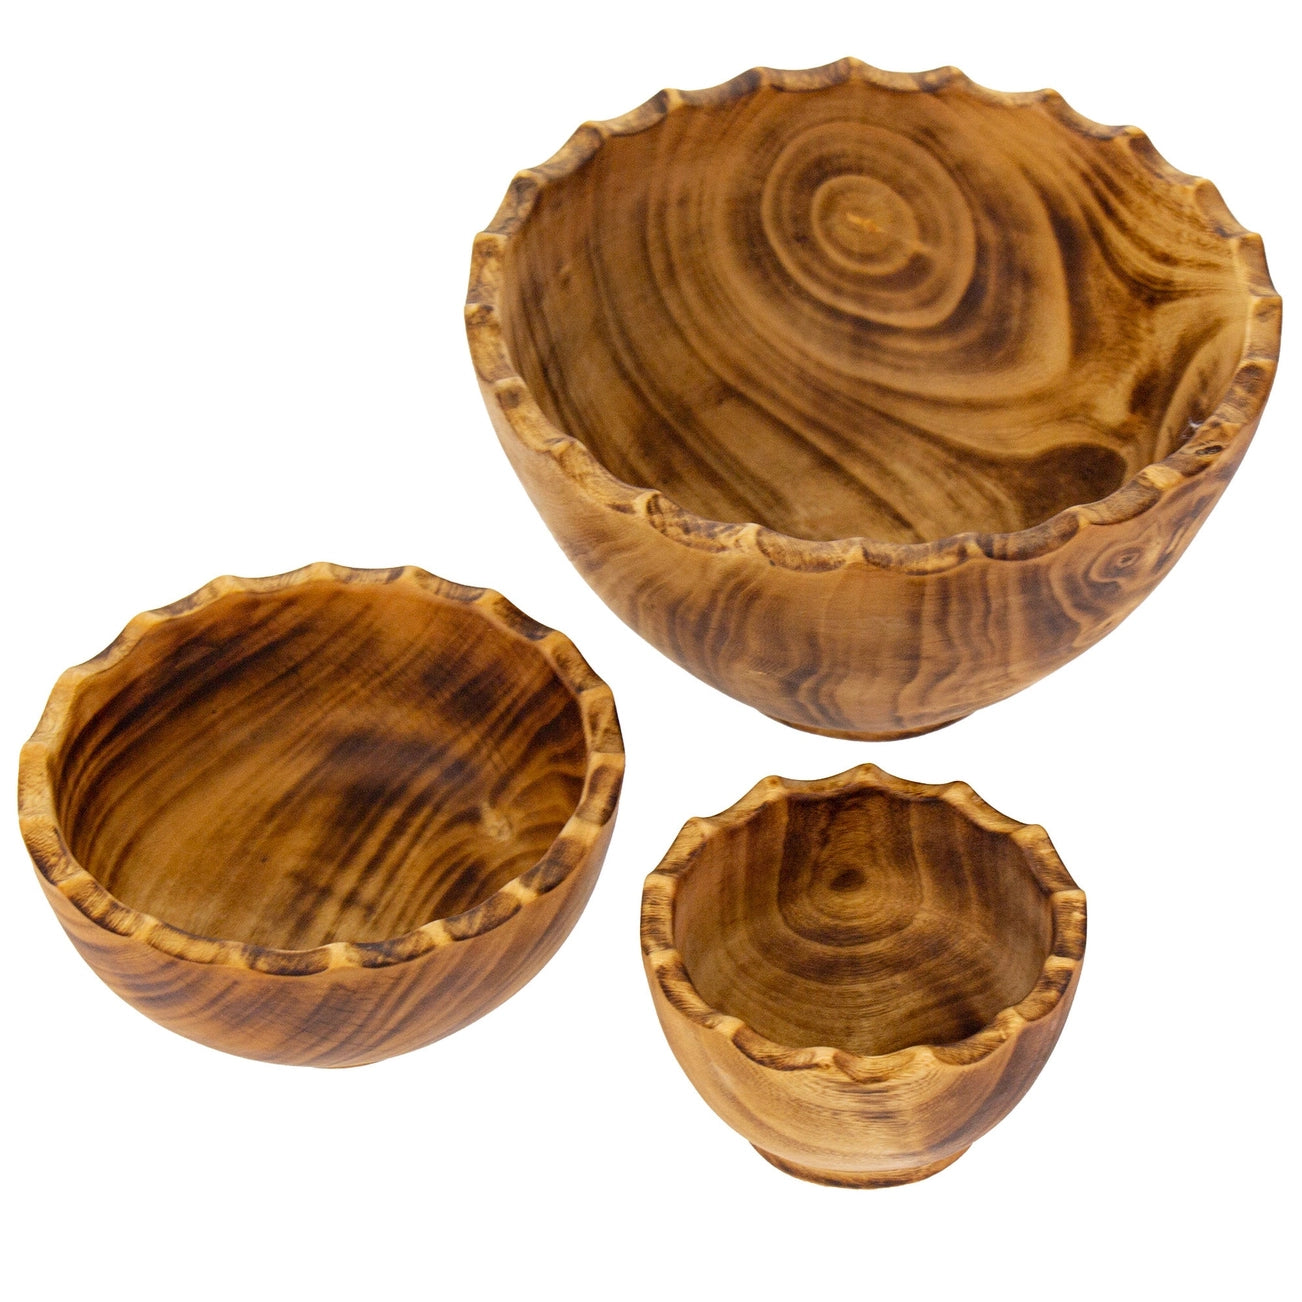 Nested Round Scalloped Jacaranda Wood Bowls {Mult. Sizes}